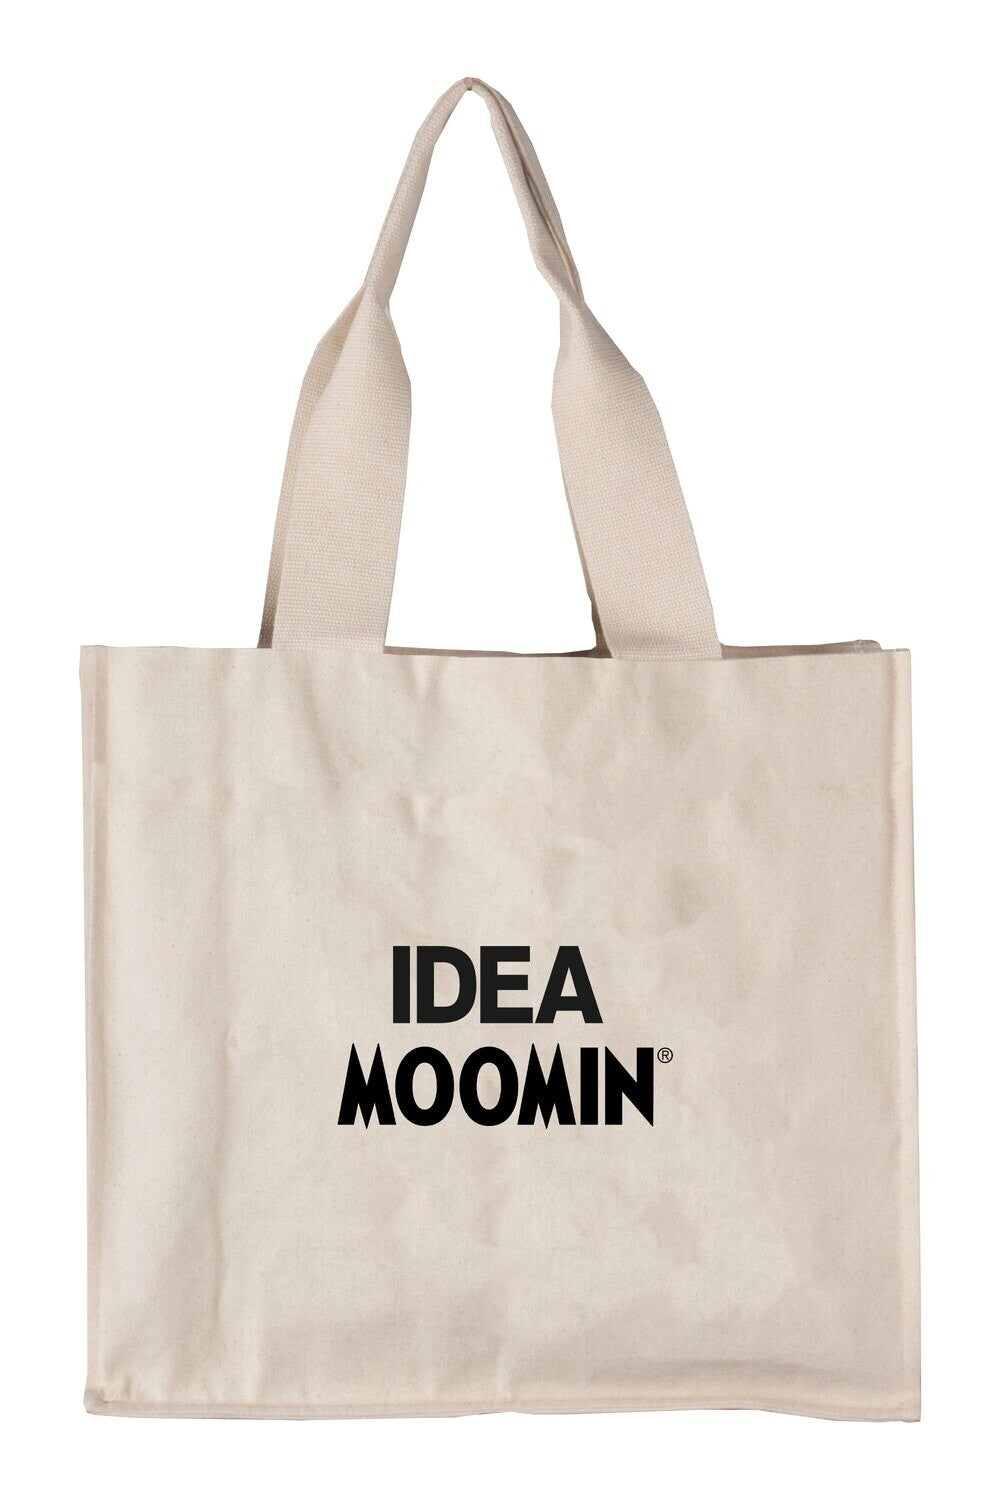 Moomin Tote Bag